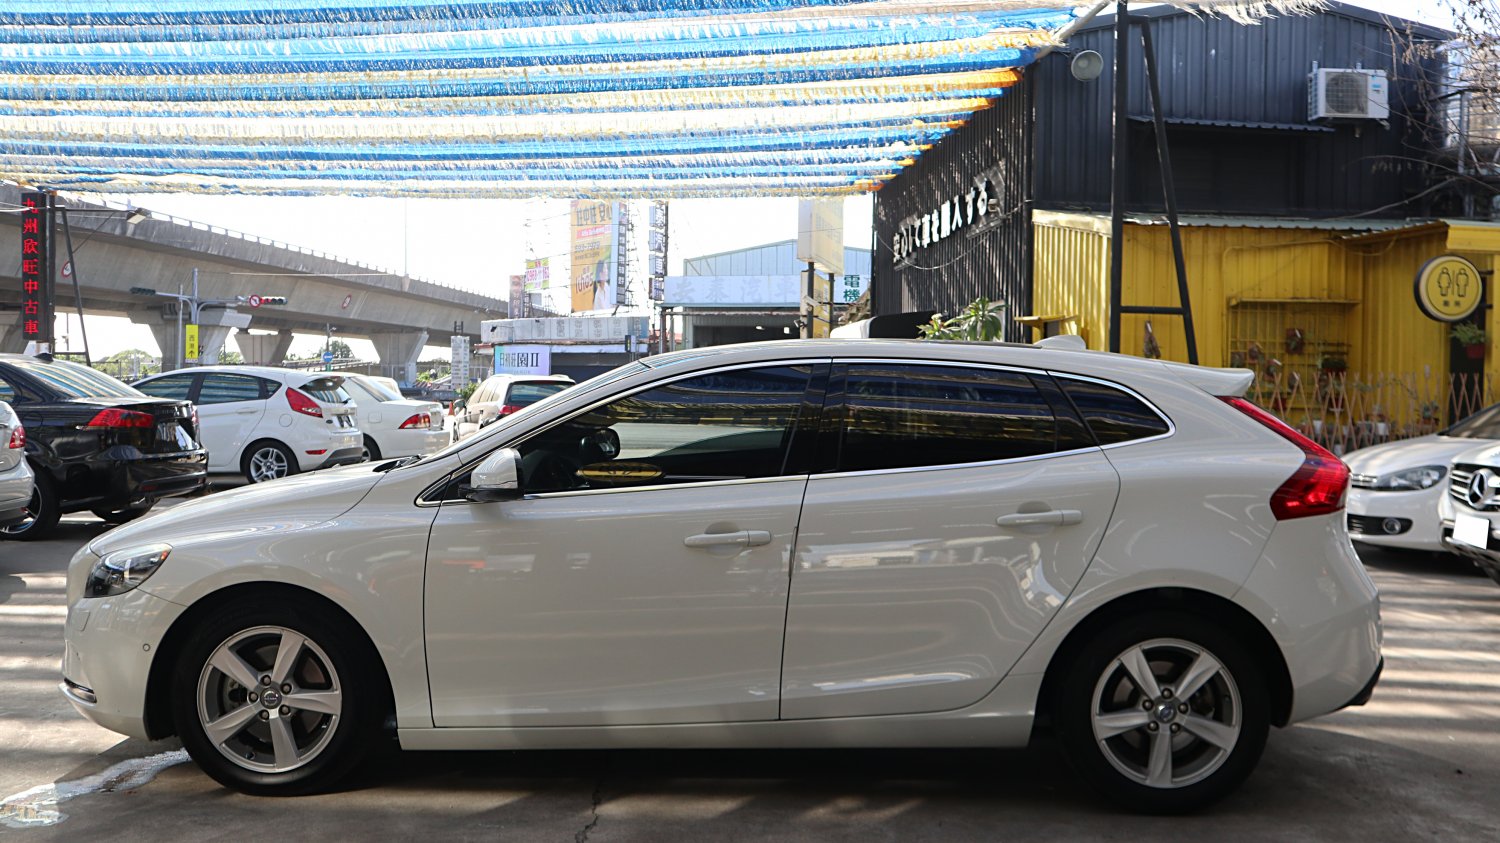 Volvo 富豪 ／ V40 ／ 2013年 ／ 2013年VOLVO V40  白色 富豪中古車 ／ 成交區